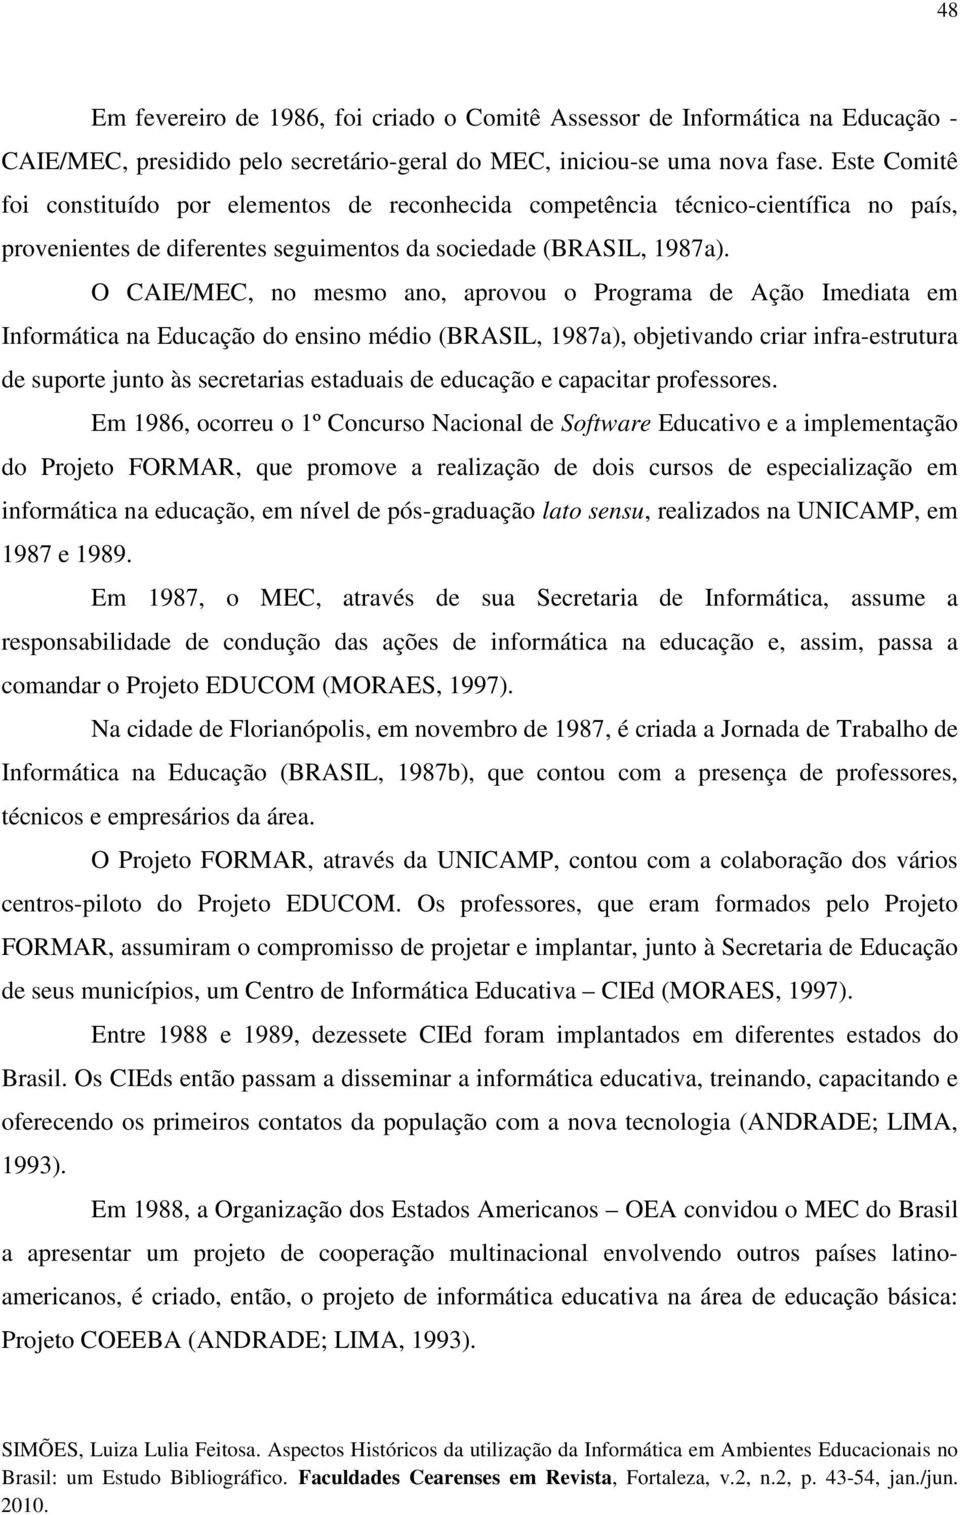 O CAIE/MEC, no mesmo ano, aprovou o Programa de Ação Imediata em Informática na Educação do ensino médio (BRASIL, 1987a), objetivando criar infra-estrutura de suporte junto às secretarias estaduais